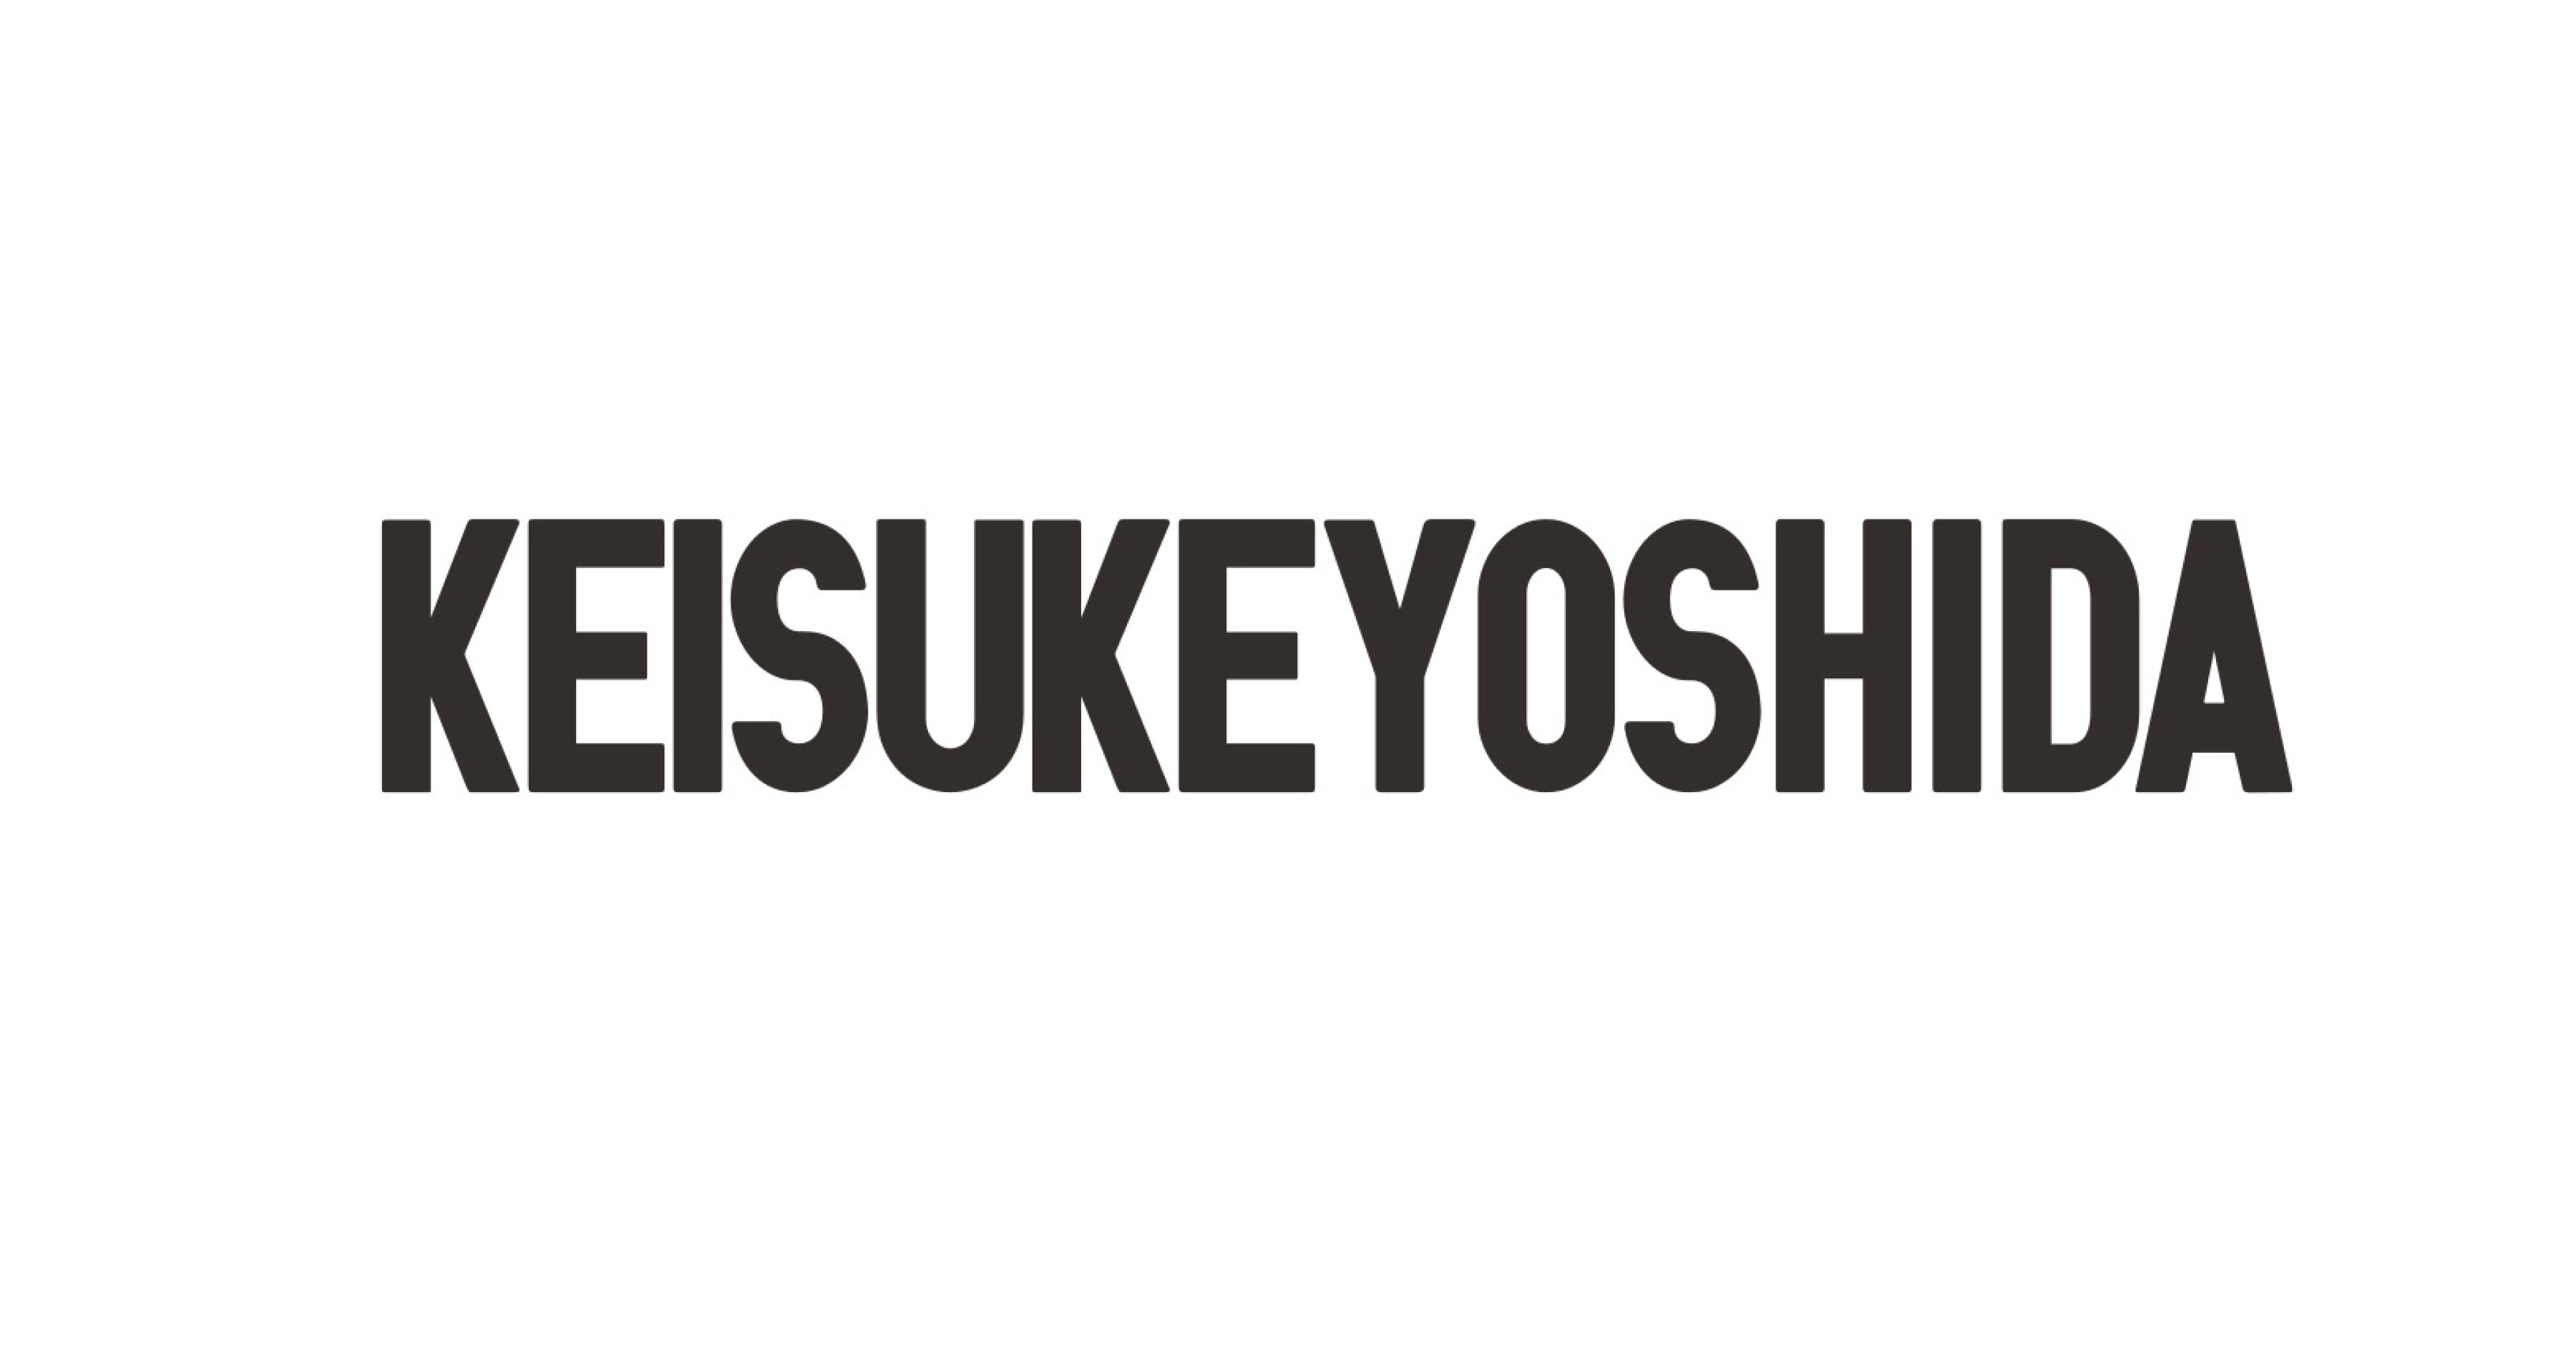 KEISUKEYOSHIDA Official Site